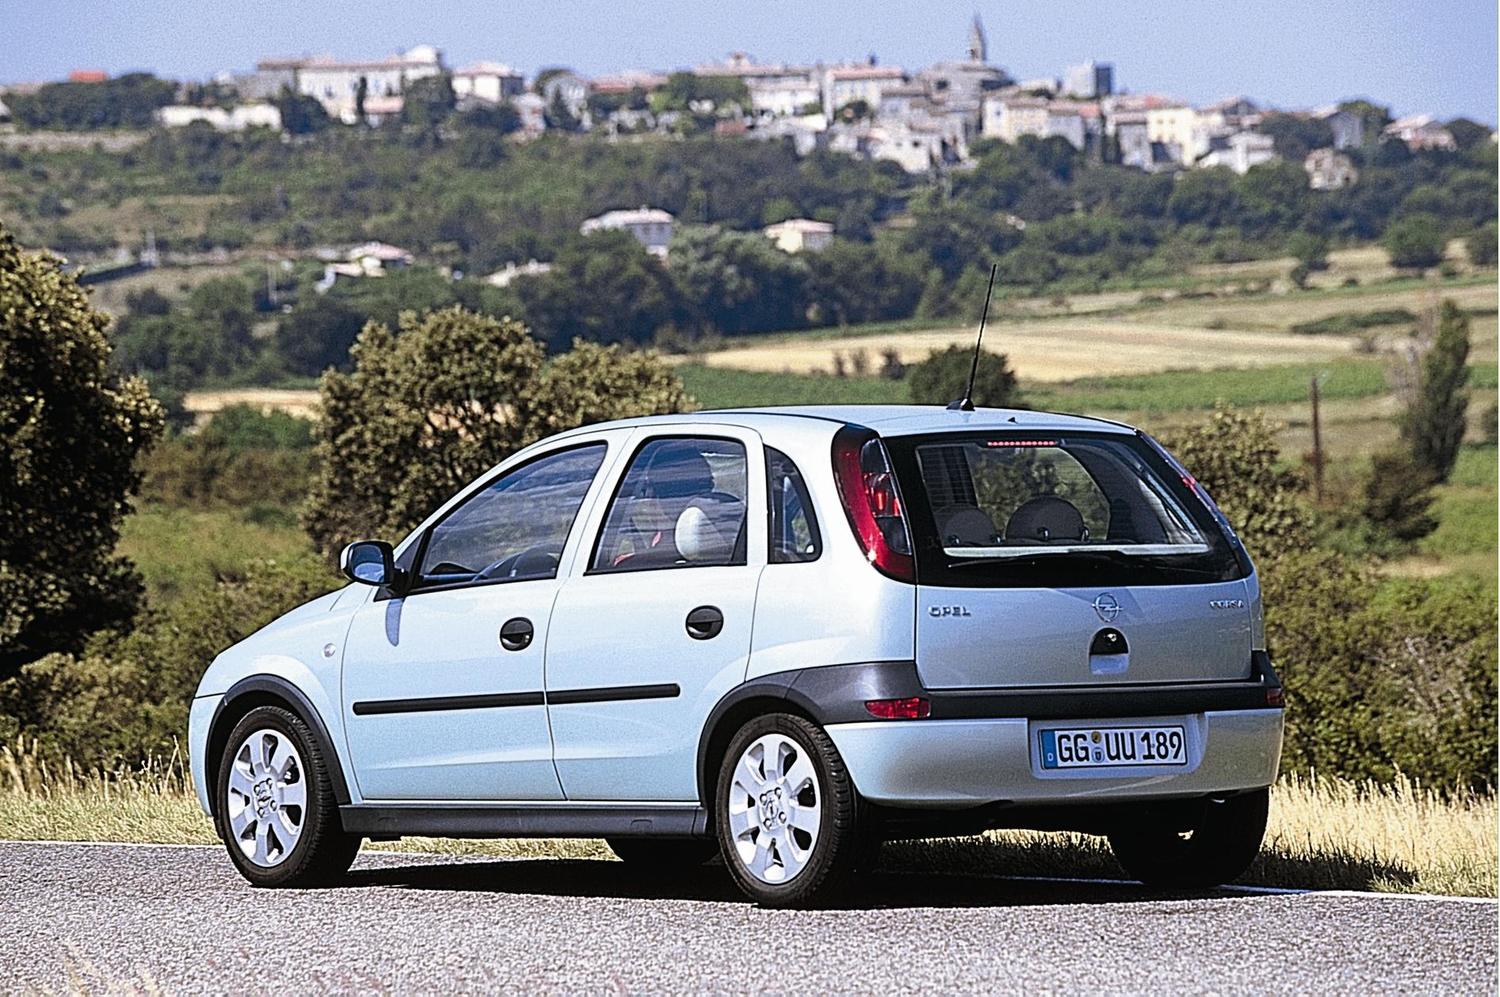 Opel corsa 1.0. Opel Corsa 1.2 2000. Opel Corsa 2003. Опель Корса 1.2 2003. Опель Корса 1.4 2003.